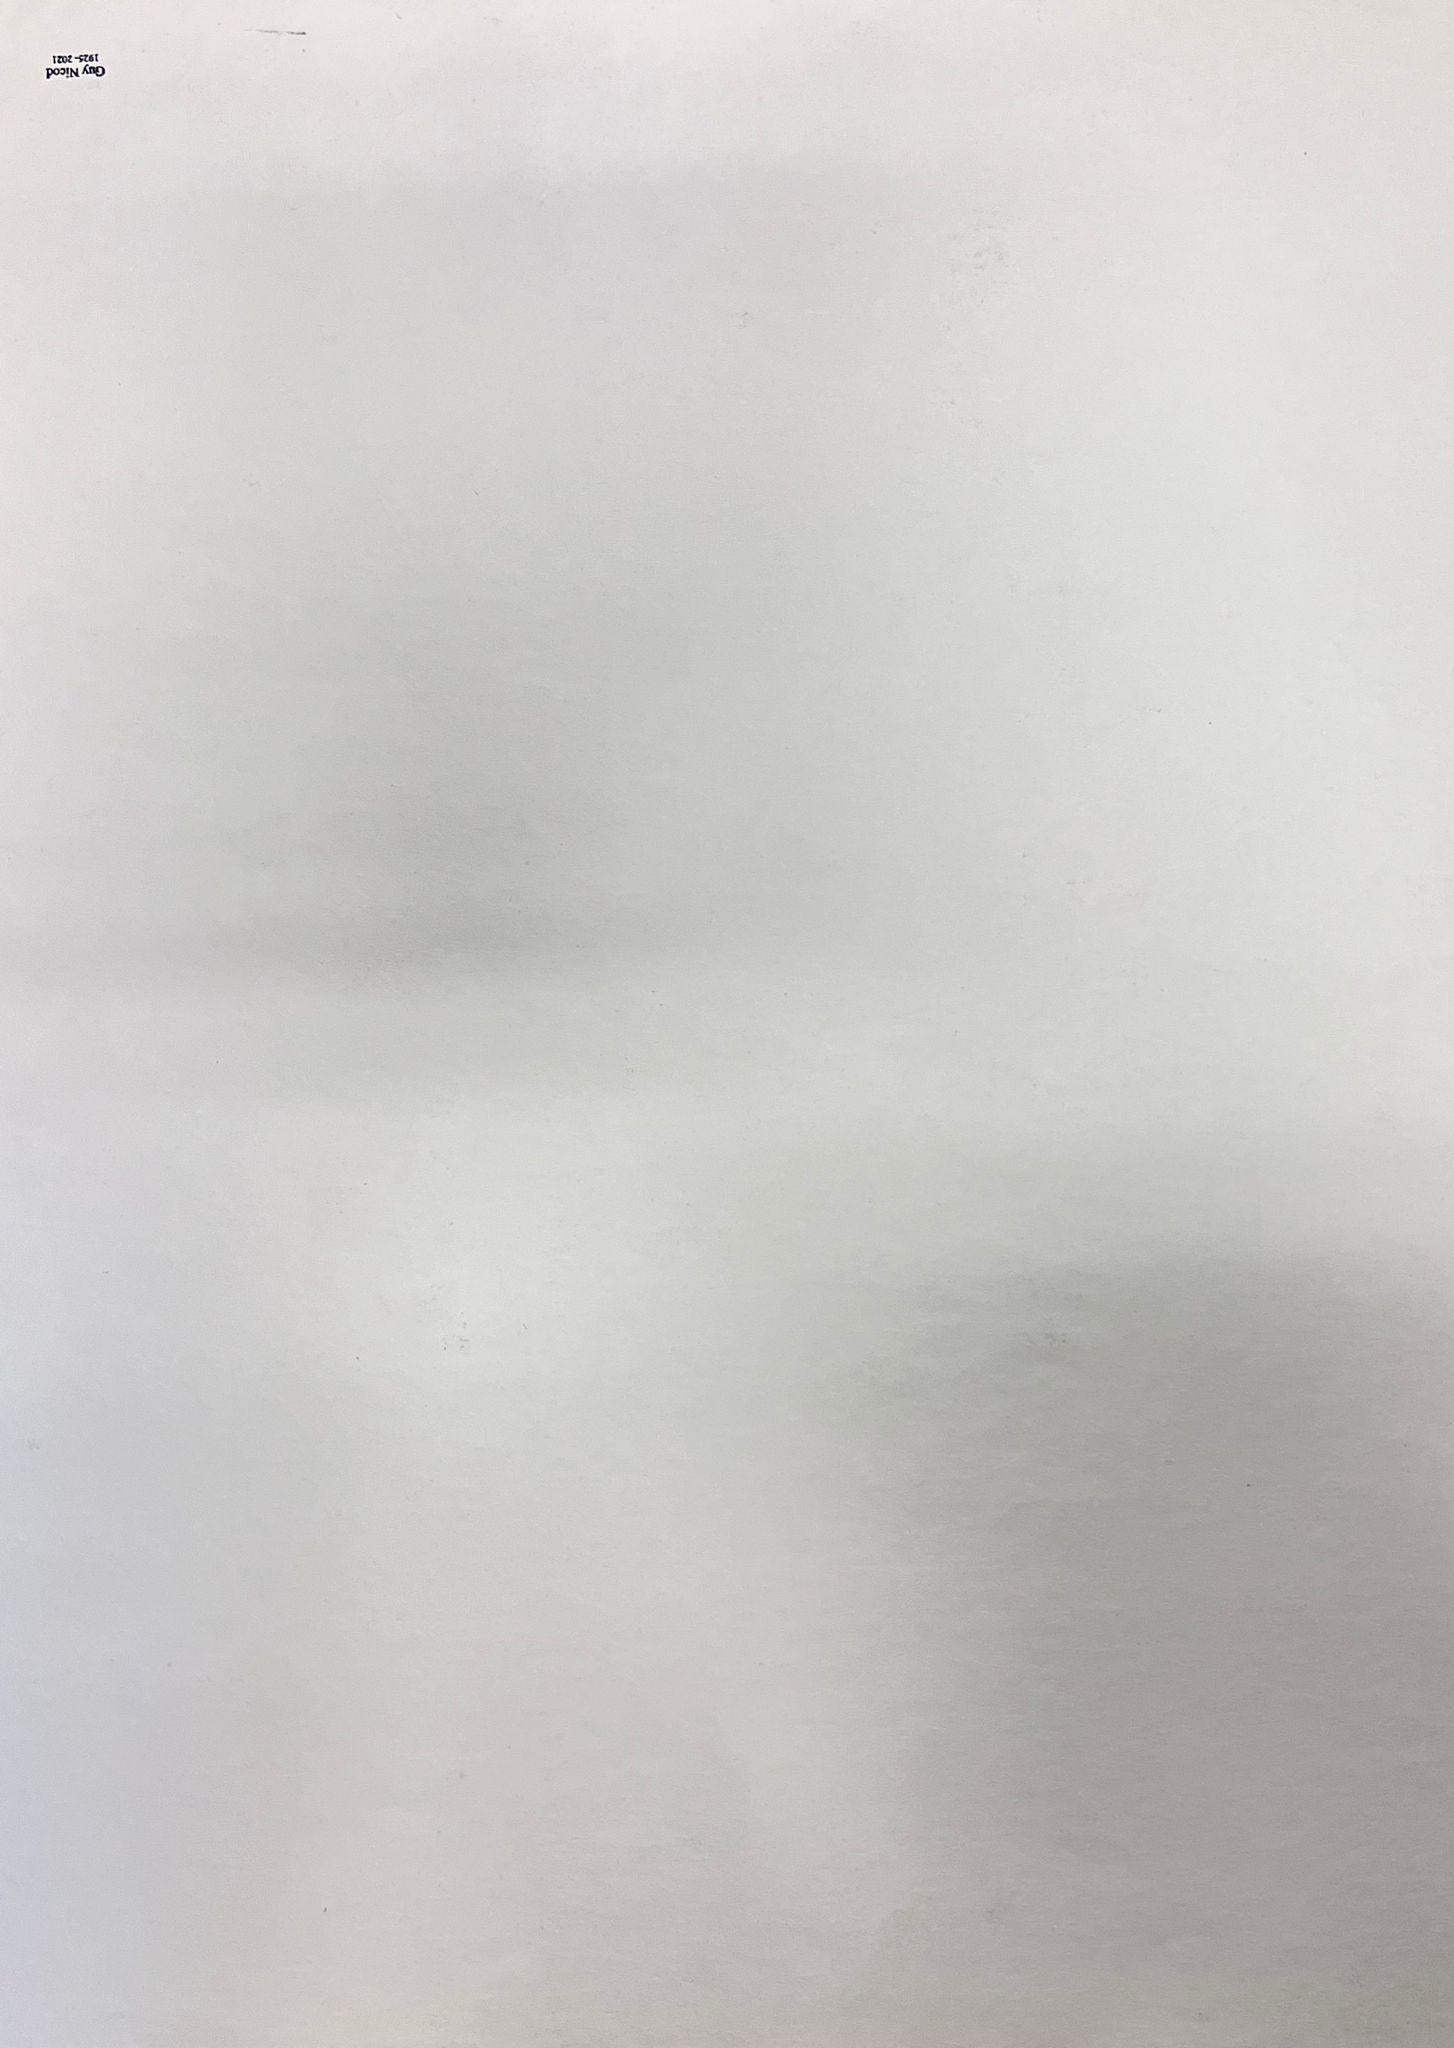 Abstrakt
von Guy Nicod
(Französisch 1923 - 2021)
Aquarell auf Künstlerpapier, ungerahmt
Gemälde : 19 x 16 Zoll
Herkunft: Künstlernachlass, Frankreich
Zustand: sehr guter und gesunder Zustand